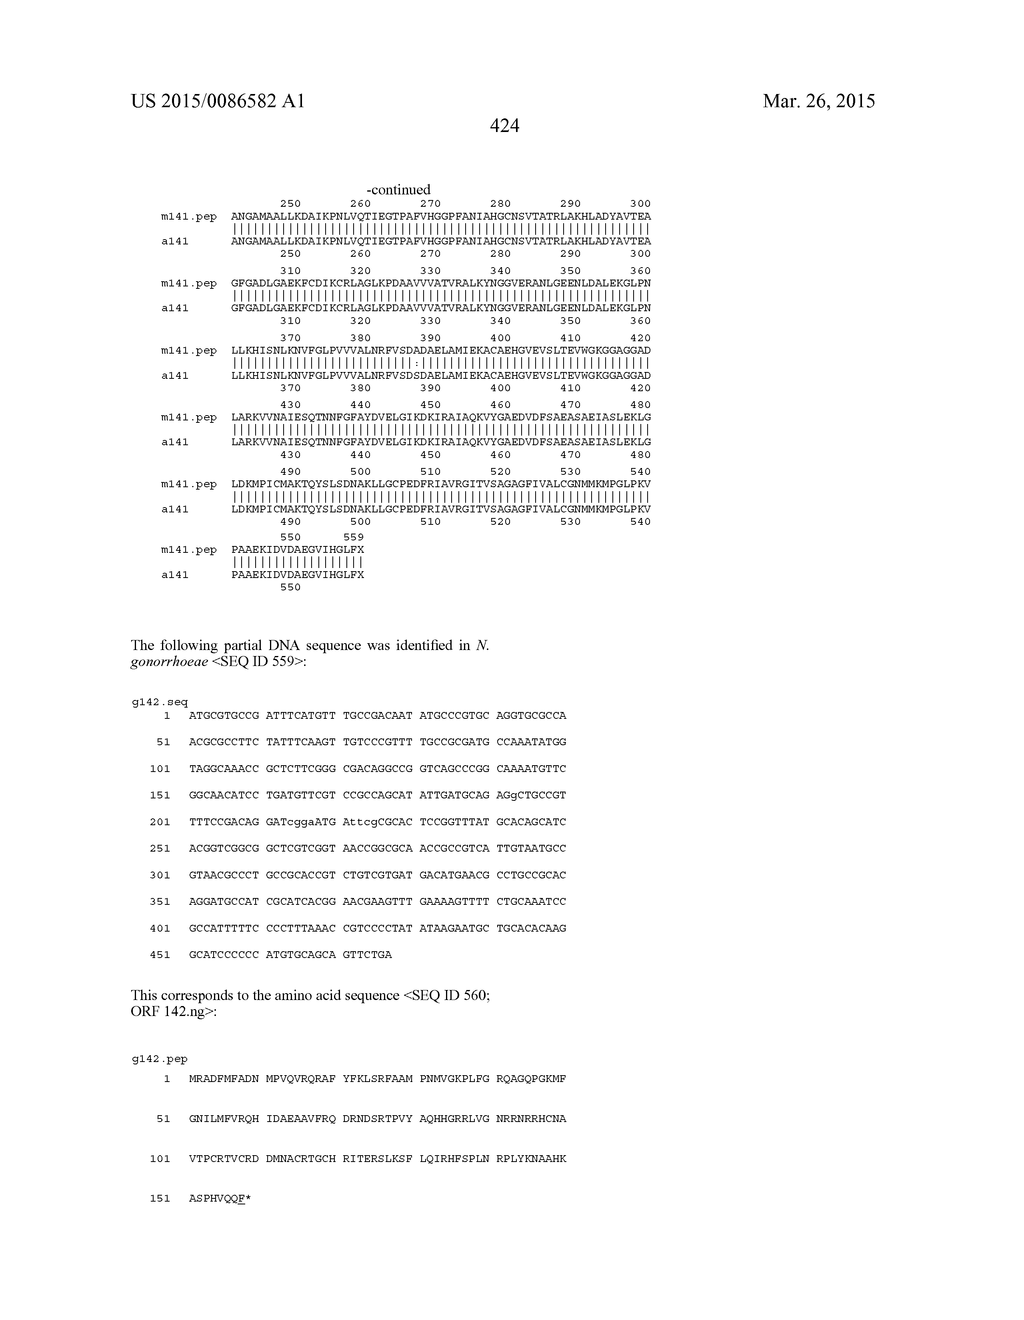 NEISSERIA MENINGITIDIS ANTIGENS AND COMPOSITIONS - diagram, schematic, and image 456